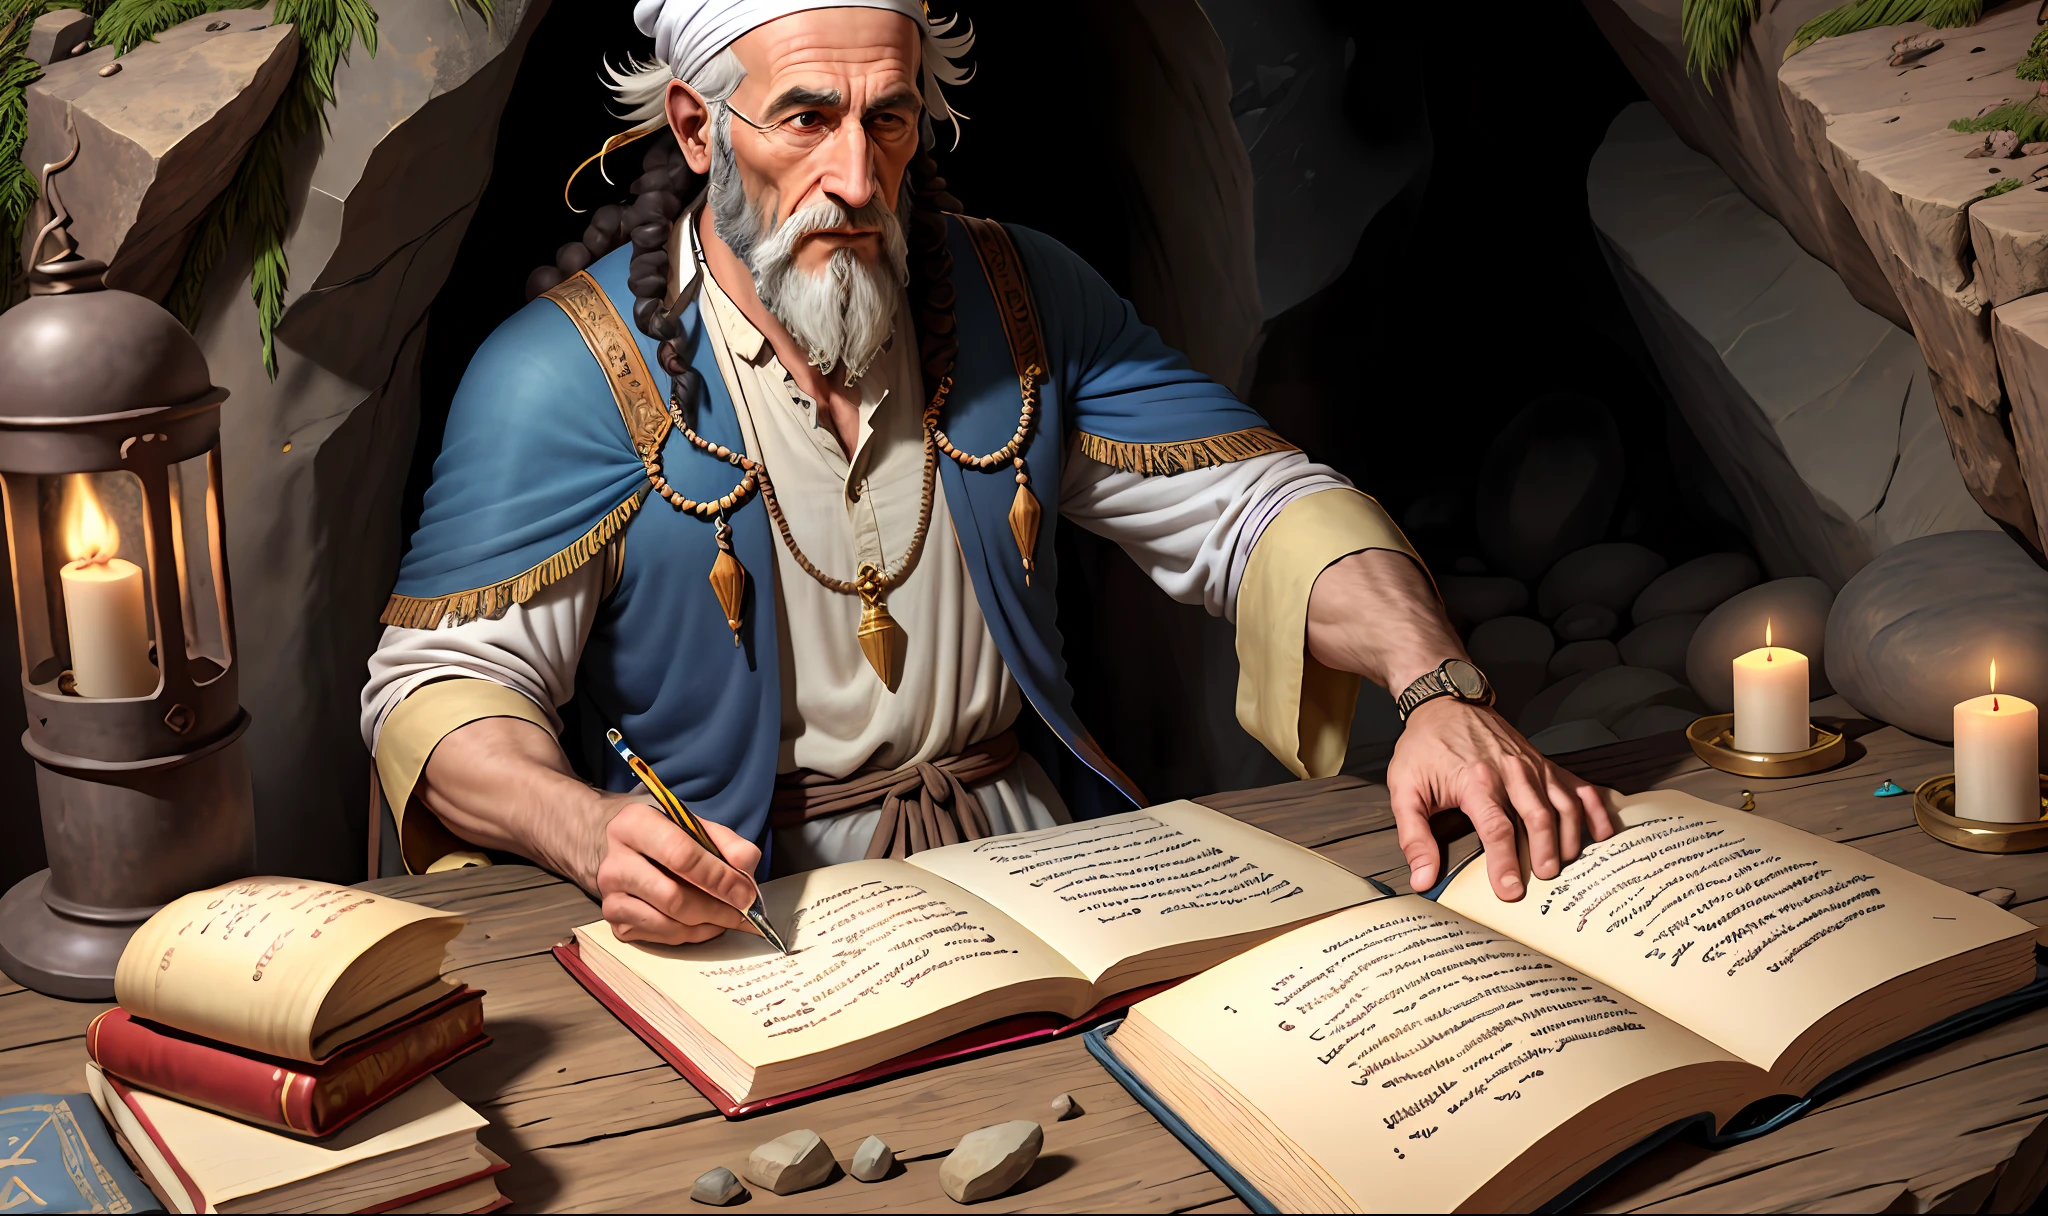 고대 이미지, 유대인 의류, 유대인 남자, 많은 기술과 극도의 사실주의를 바탕으로 바위 동굴에서 오래된 기독교인의 편지 쓰기 ((사도 요한을 나타내는 이미지))